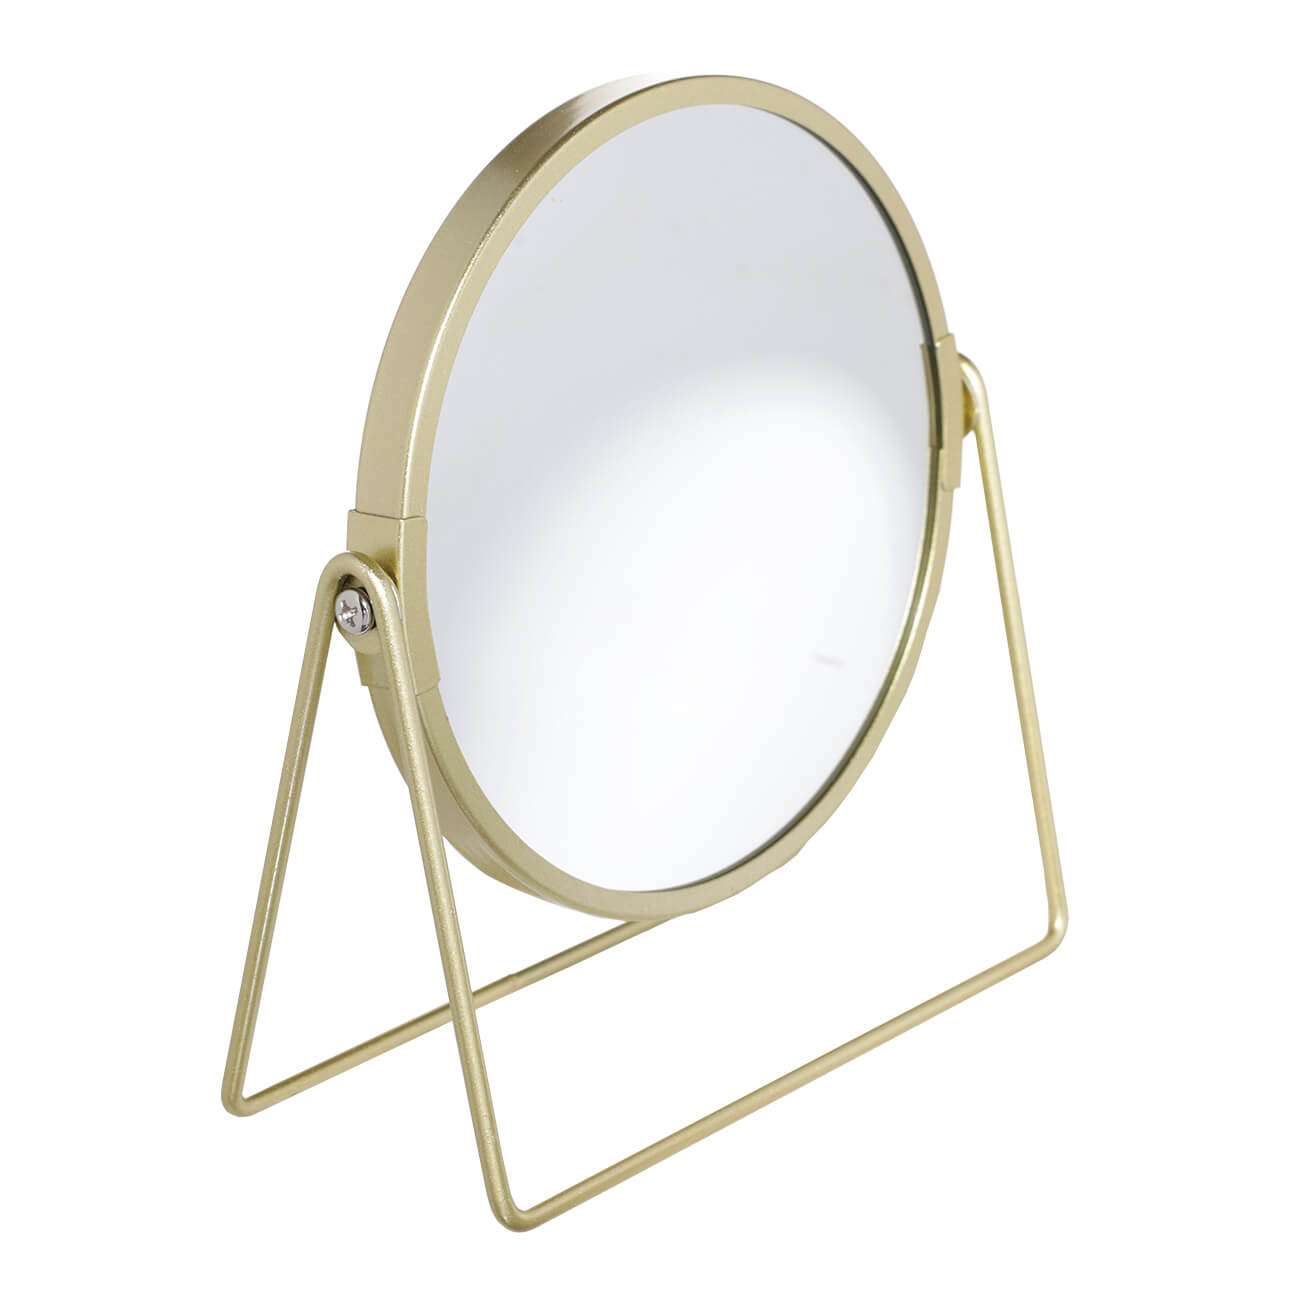 Зеркало настольное, 18 см, двустороннее, металл, круглое, золотистое, Freya зеркало настольное 20 см двустороннее металл круглое черное graphic